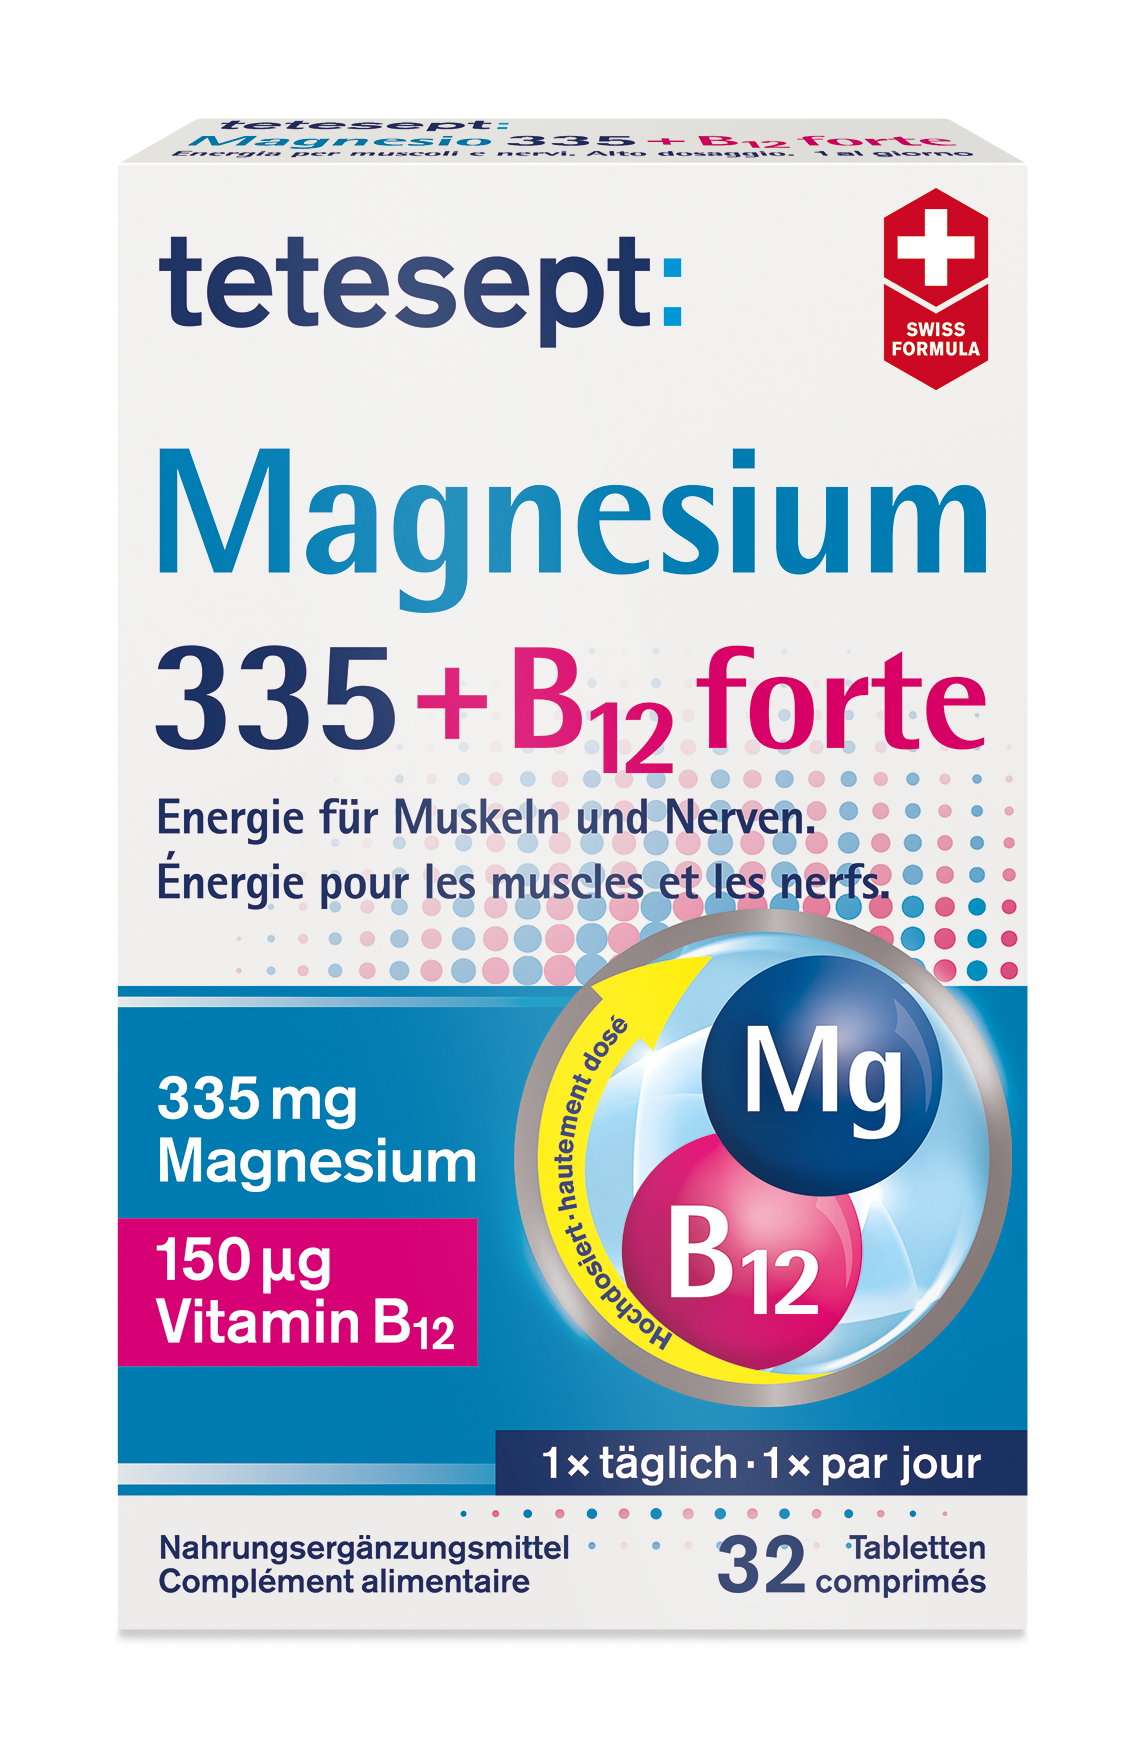 tetesept Magnesium 335 + B12 forte Tabletten